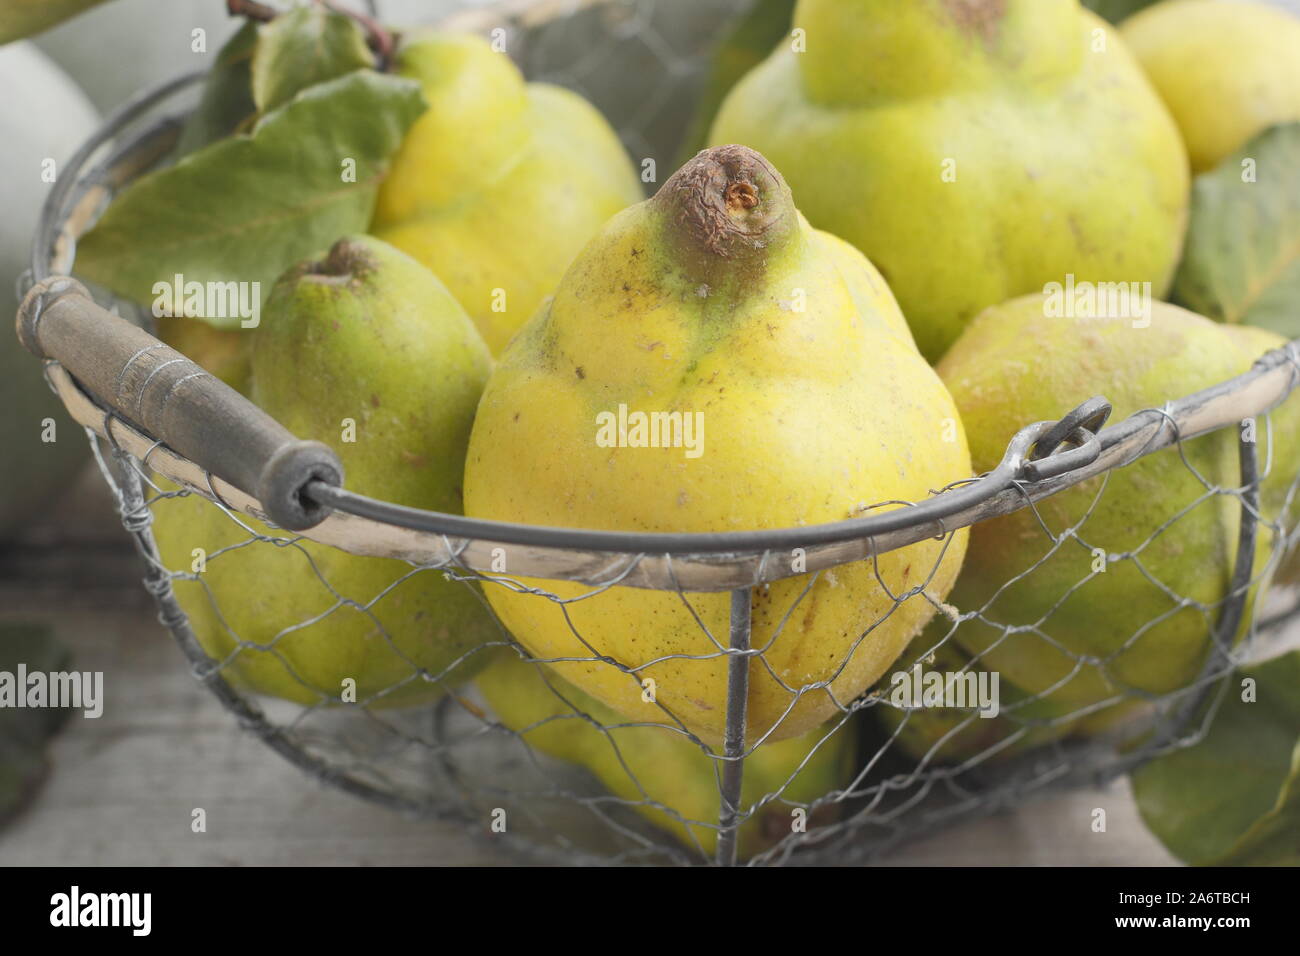 Cydonia oblonga 'Vranja'. Quince fruits dans un panier métallique pour faire de la gelée. UK Banque D'Images